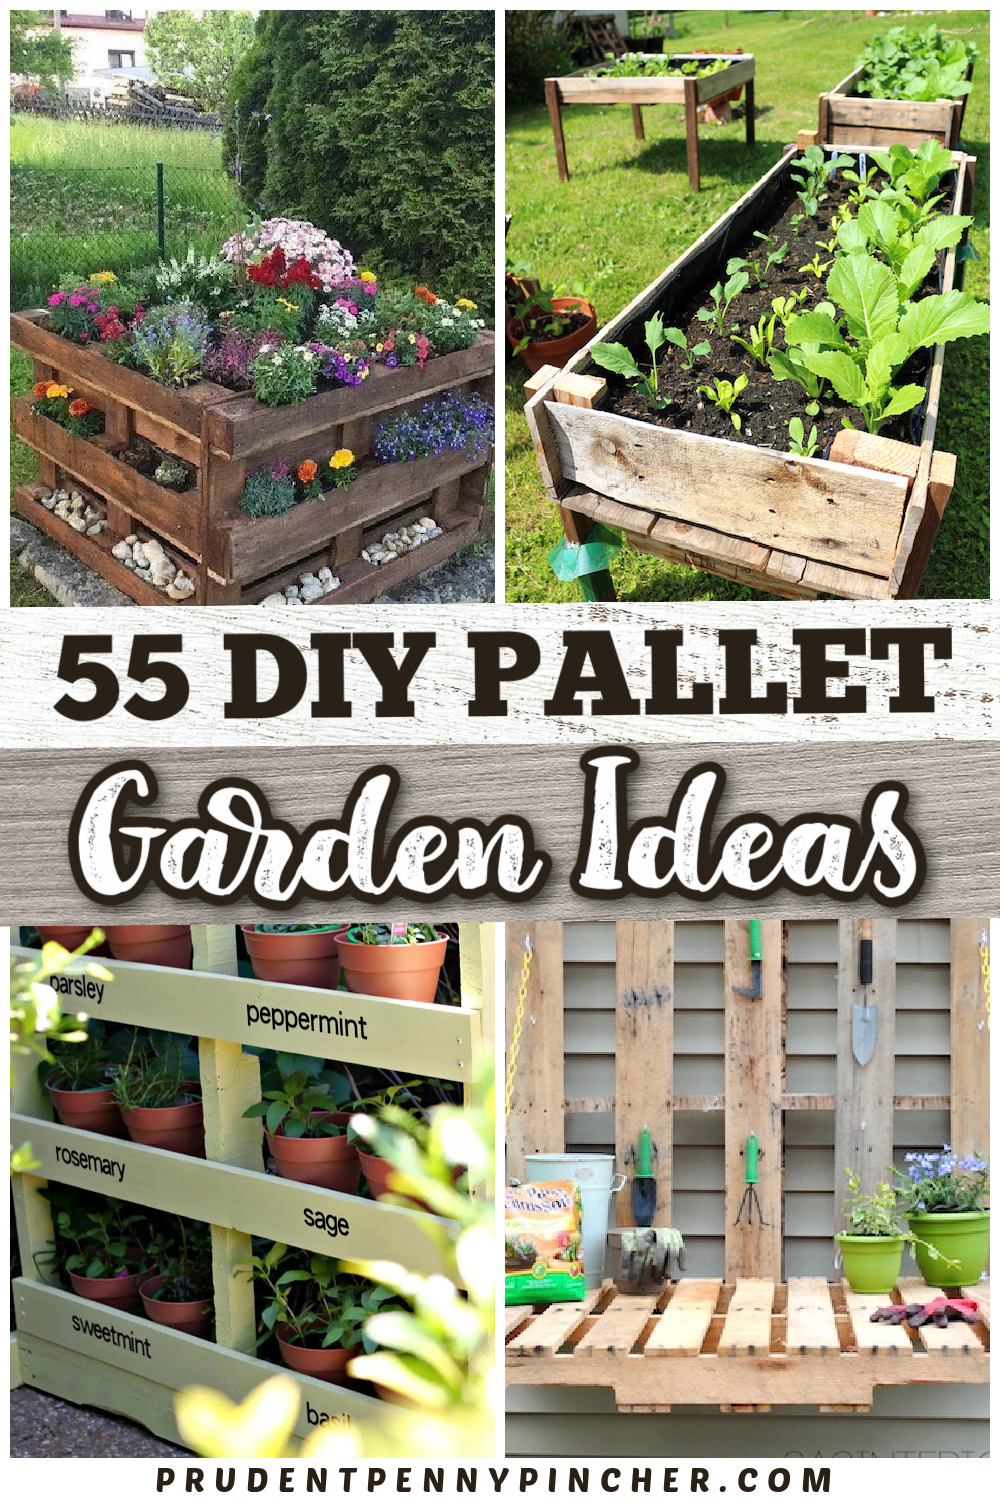 55 DIY Pallet Garden Ideas - Prudent Penny Pincher